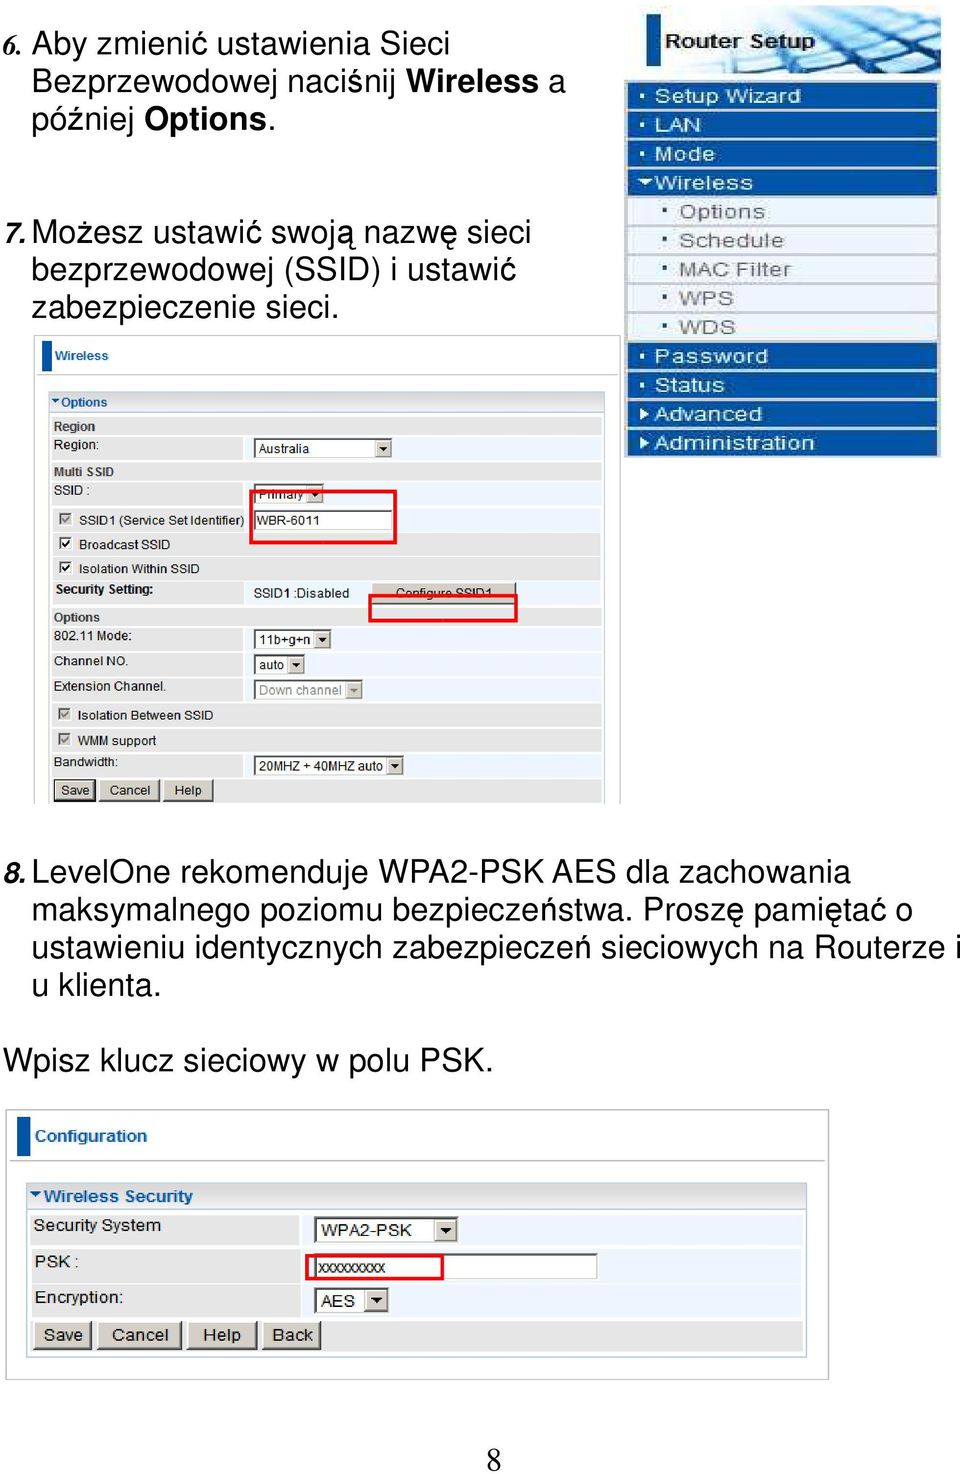 LevelOne rekomenduje WPA2-PSK AES dla zachowania maksymalnego poziomu bezpieczeństwa.